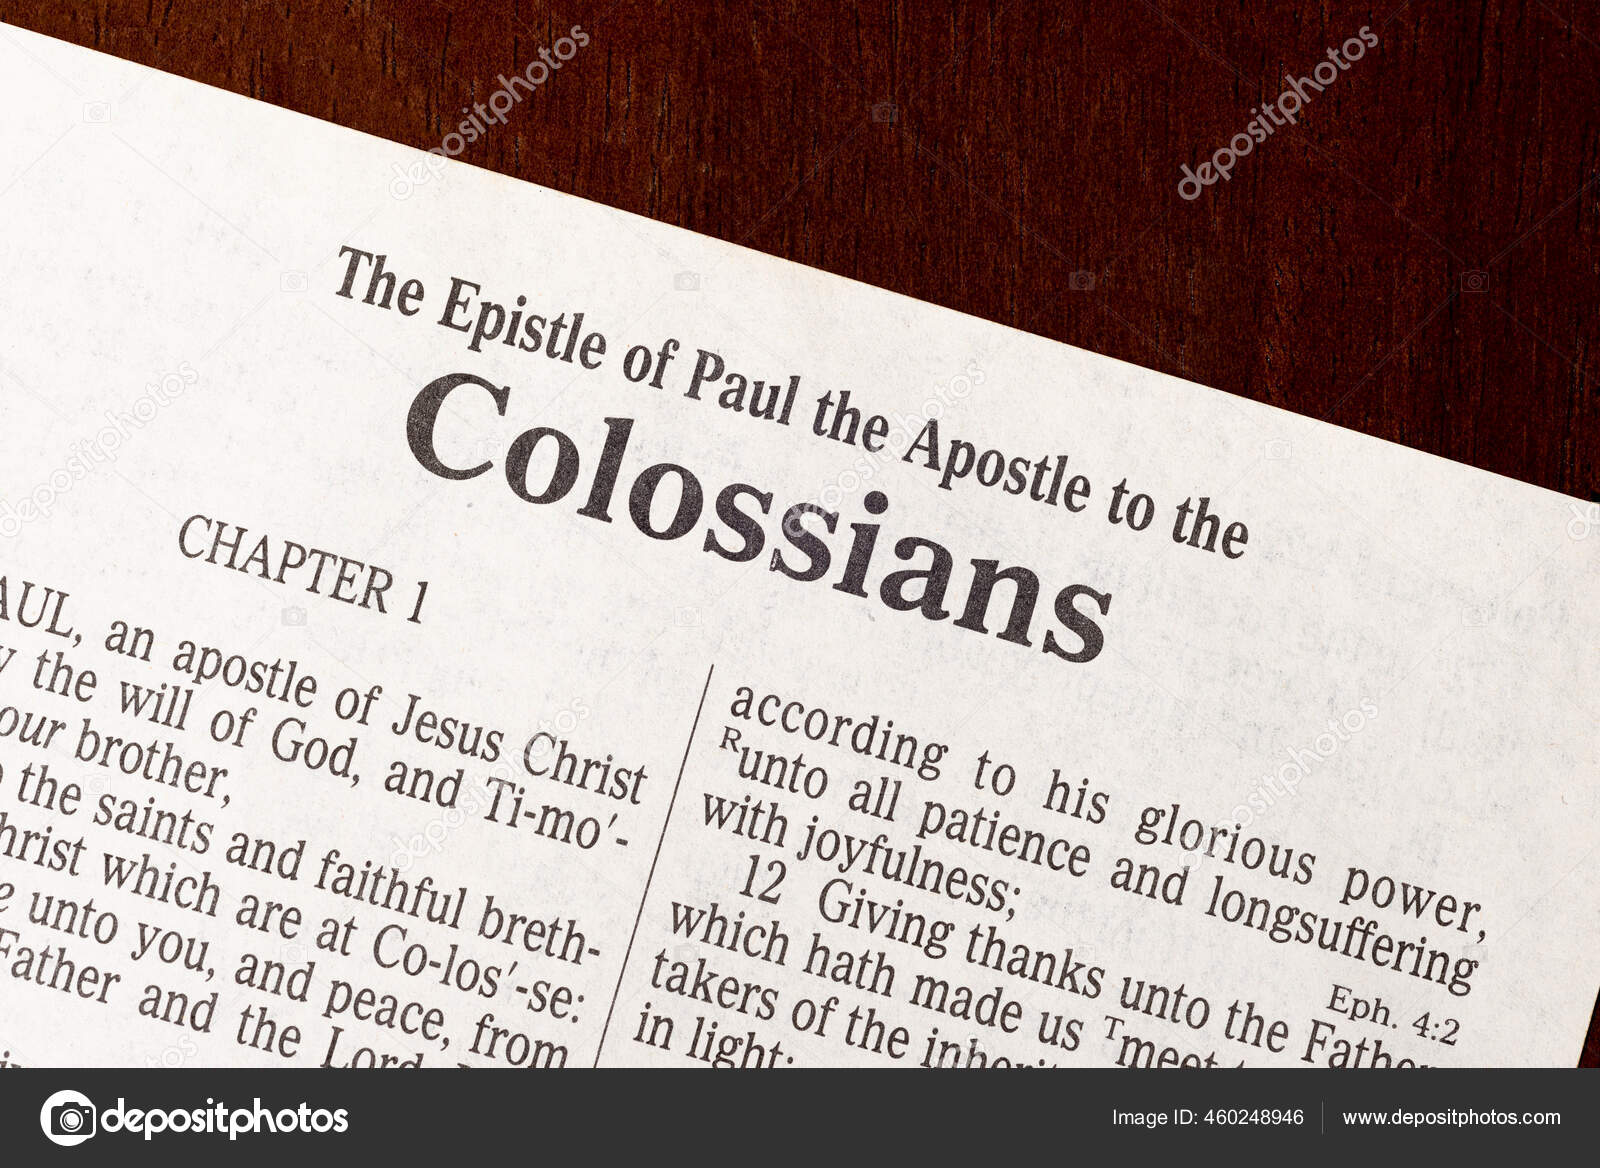 Colossians Bible Study